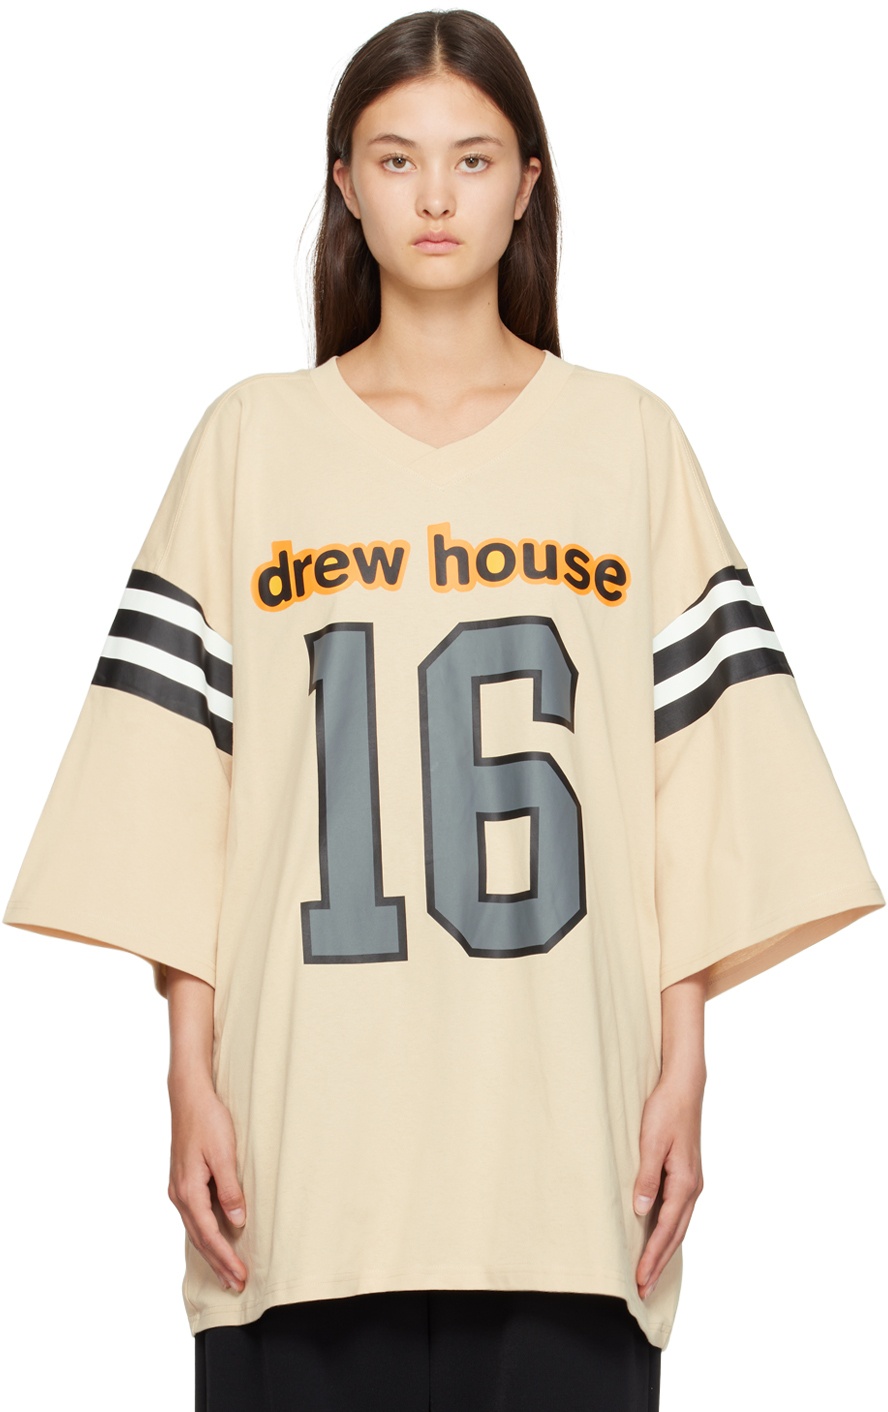 https://cdn.clothbase.com/uploads/5567aa74-6956-4c1f-ab8f-c65d2bf0a0d1/taupe-drew-house-away-jersey-t-shirt.jpg